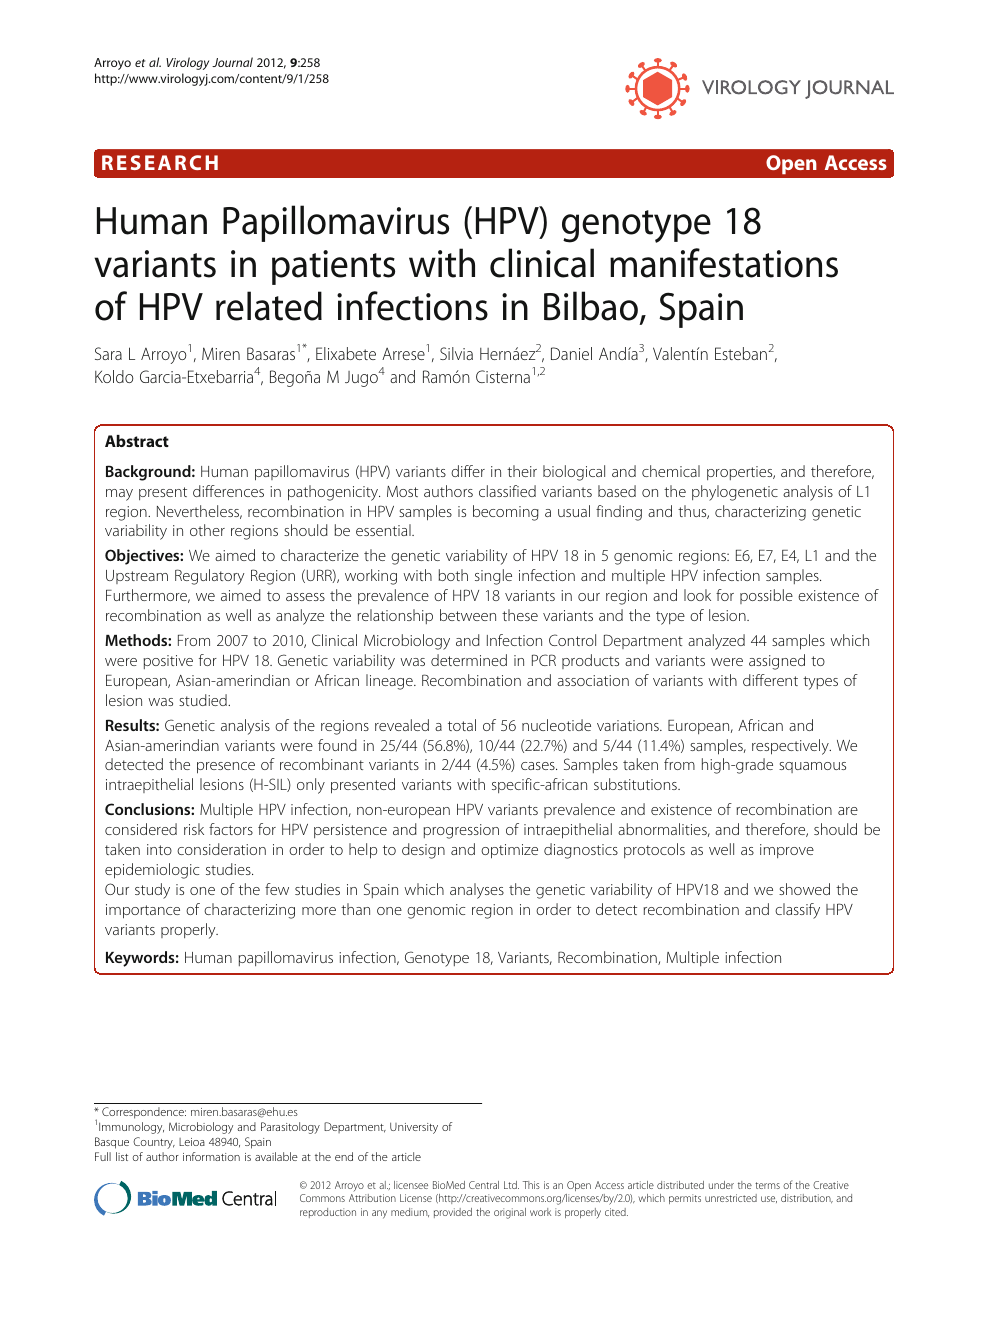 Human papillomavirus infection variants